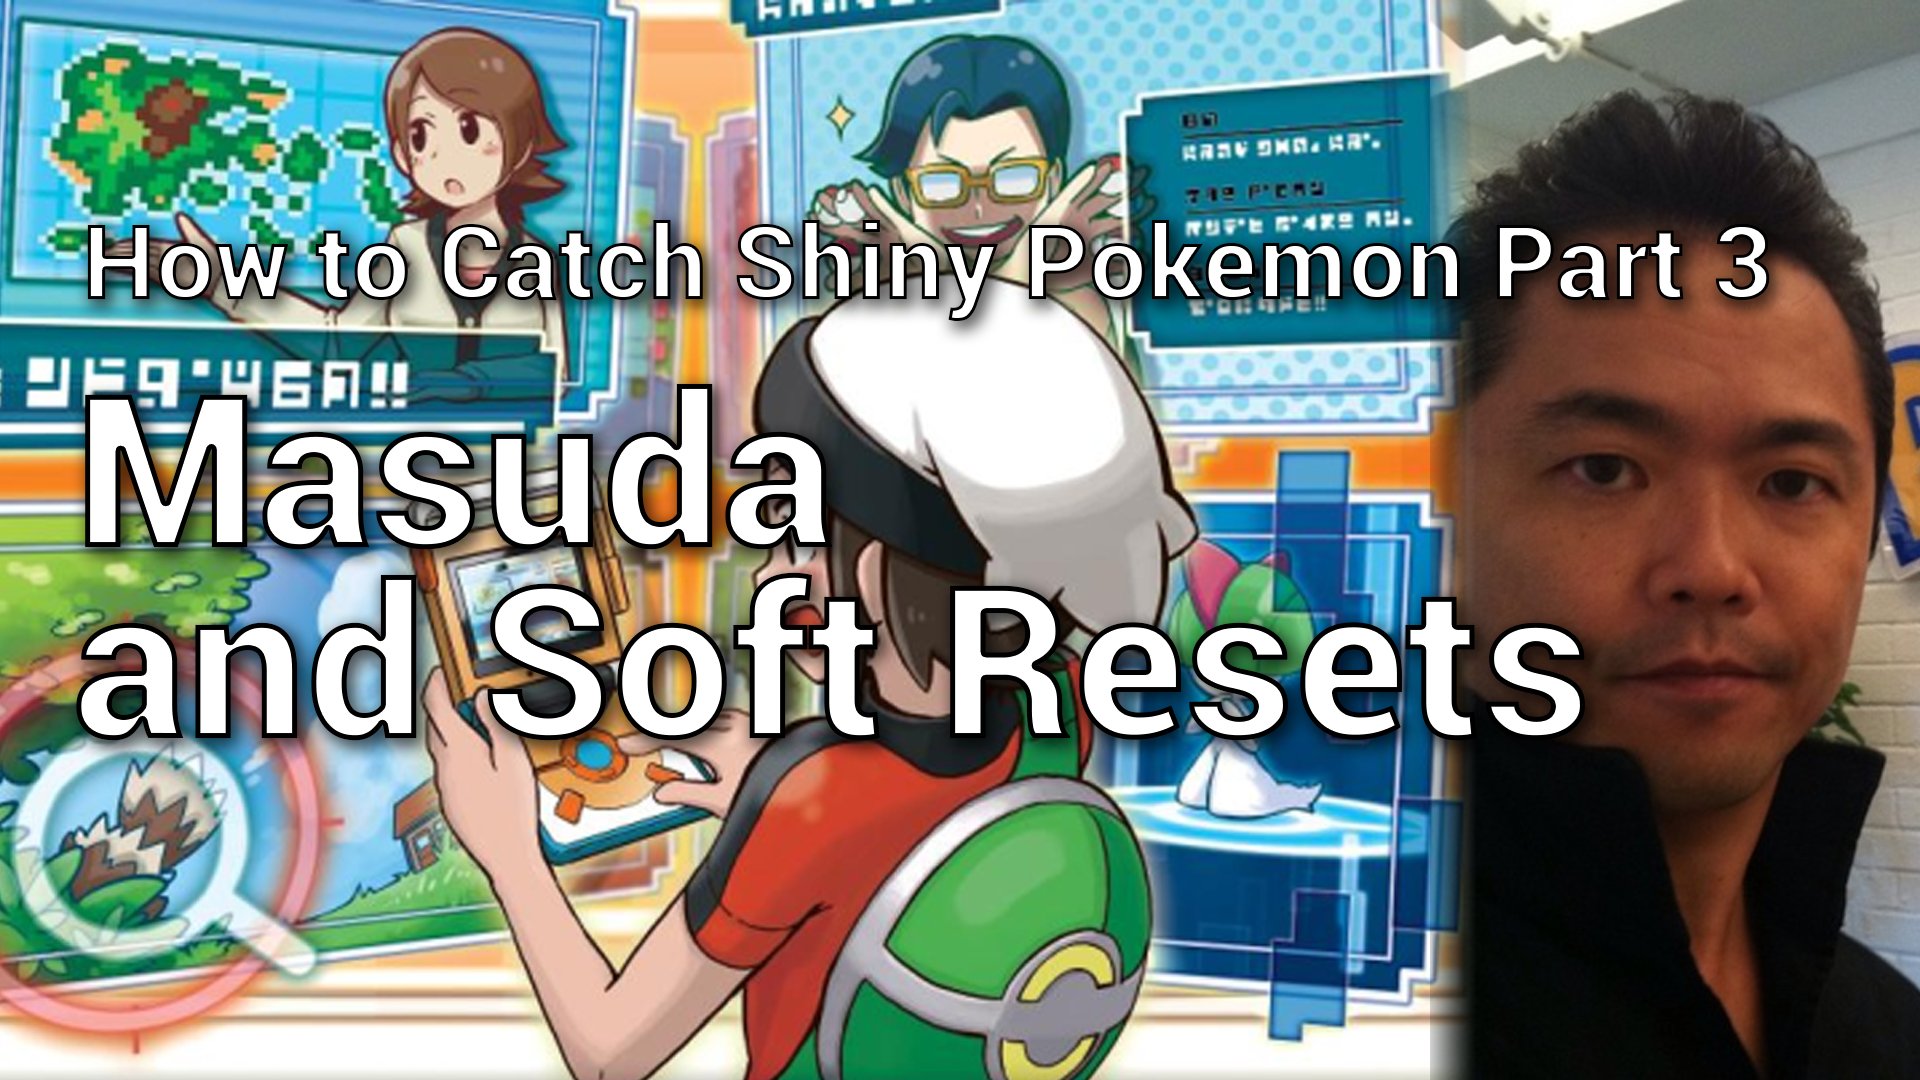 How to Catch Shiny Pokemon - Masuda Method & Soft Reset